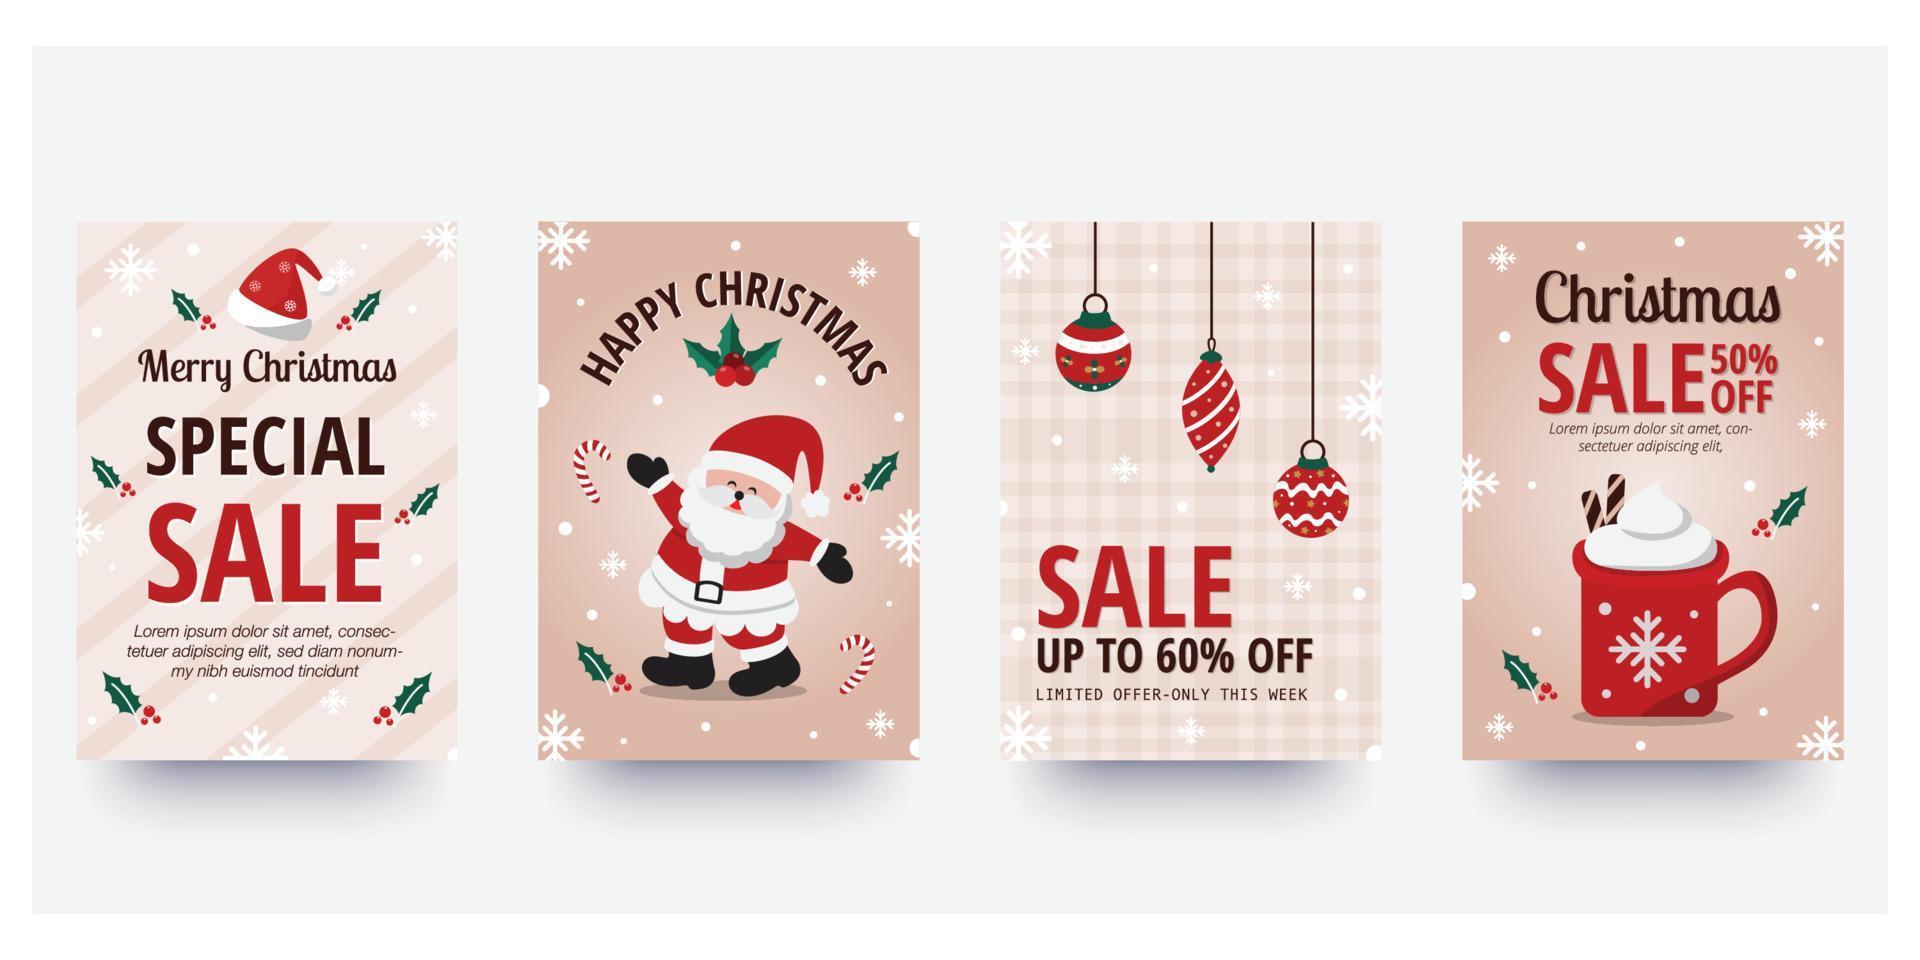 Weihnachtssle-Flyer und Plakatdesign mit Verkaufsförderungstext und buntem Weihnachtselement. Vektor-Illustration. vektor